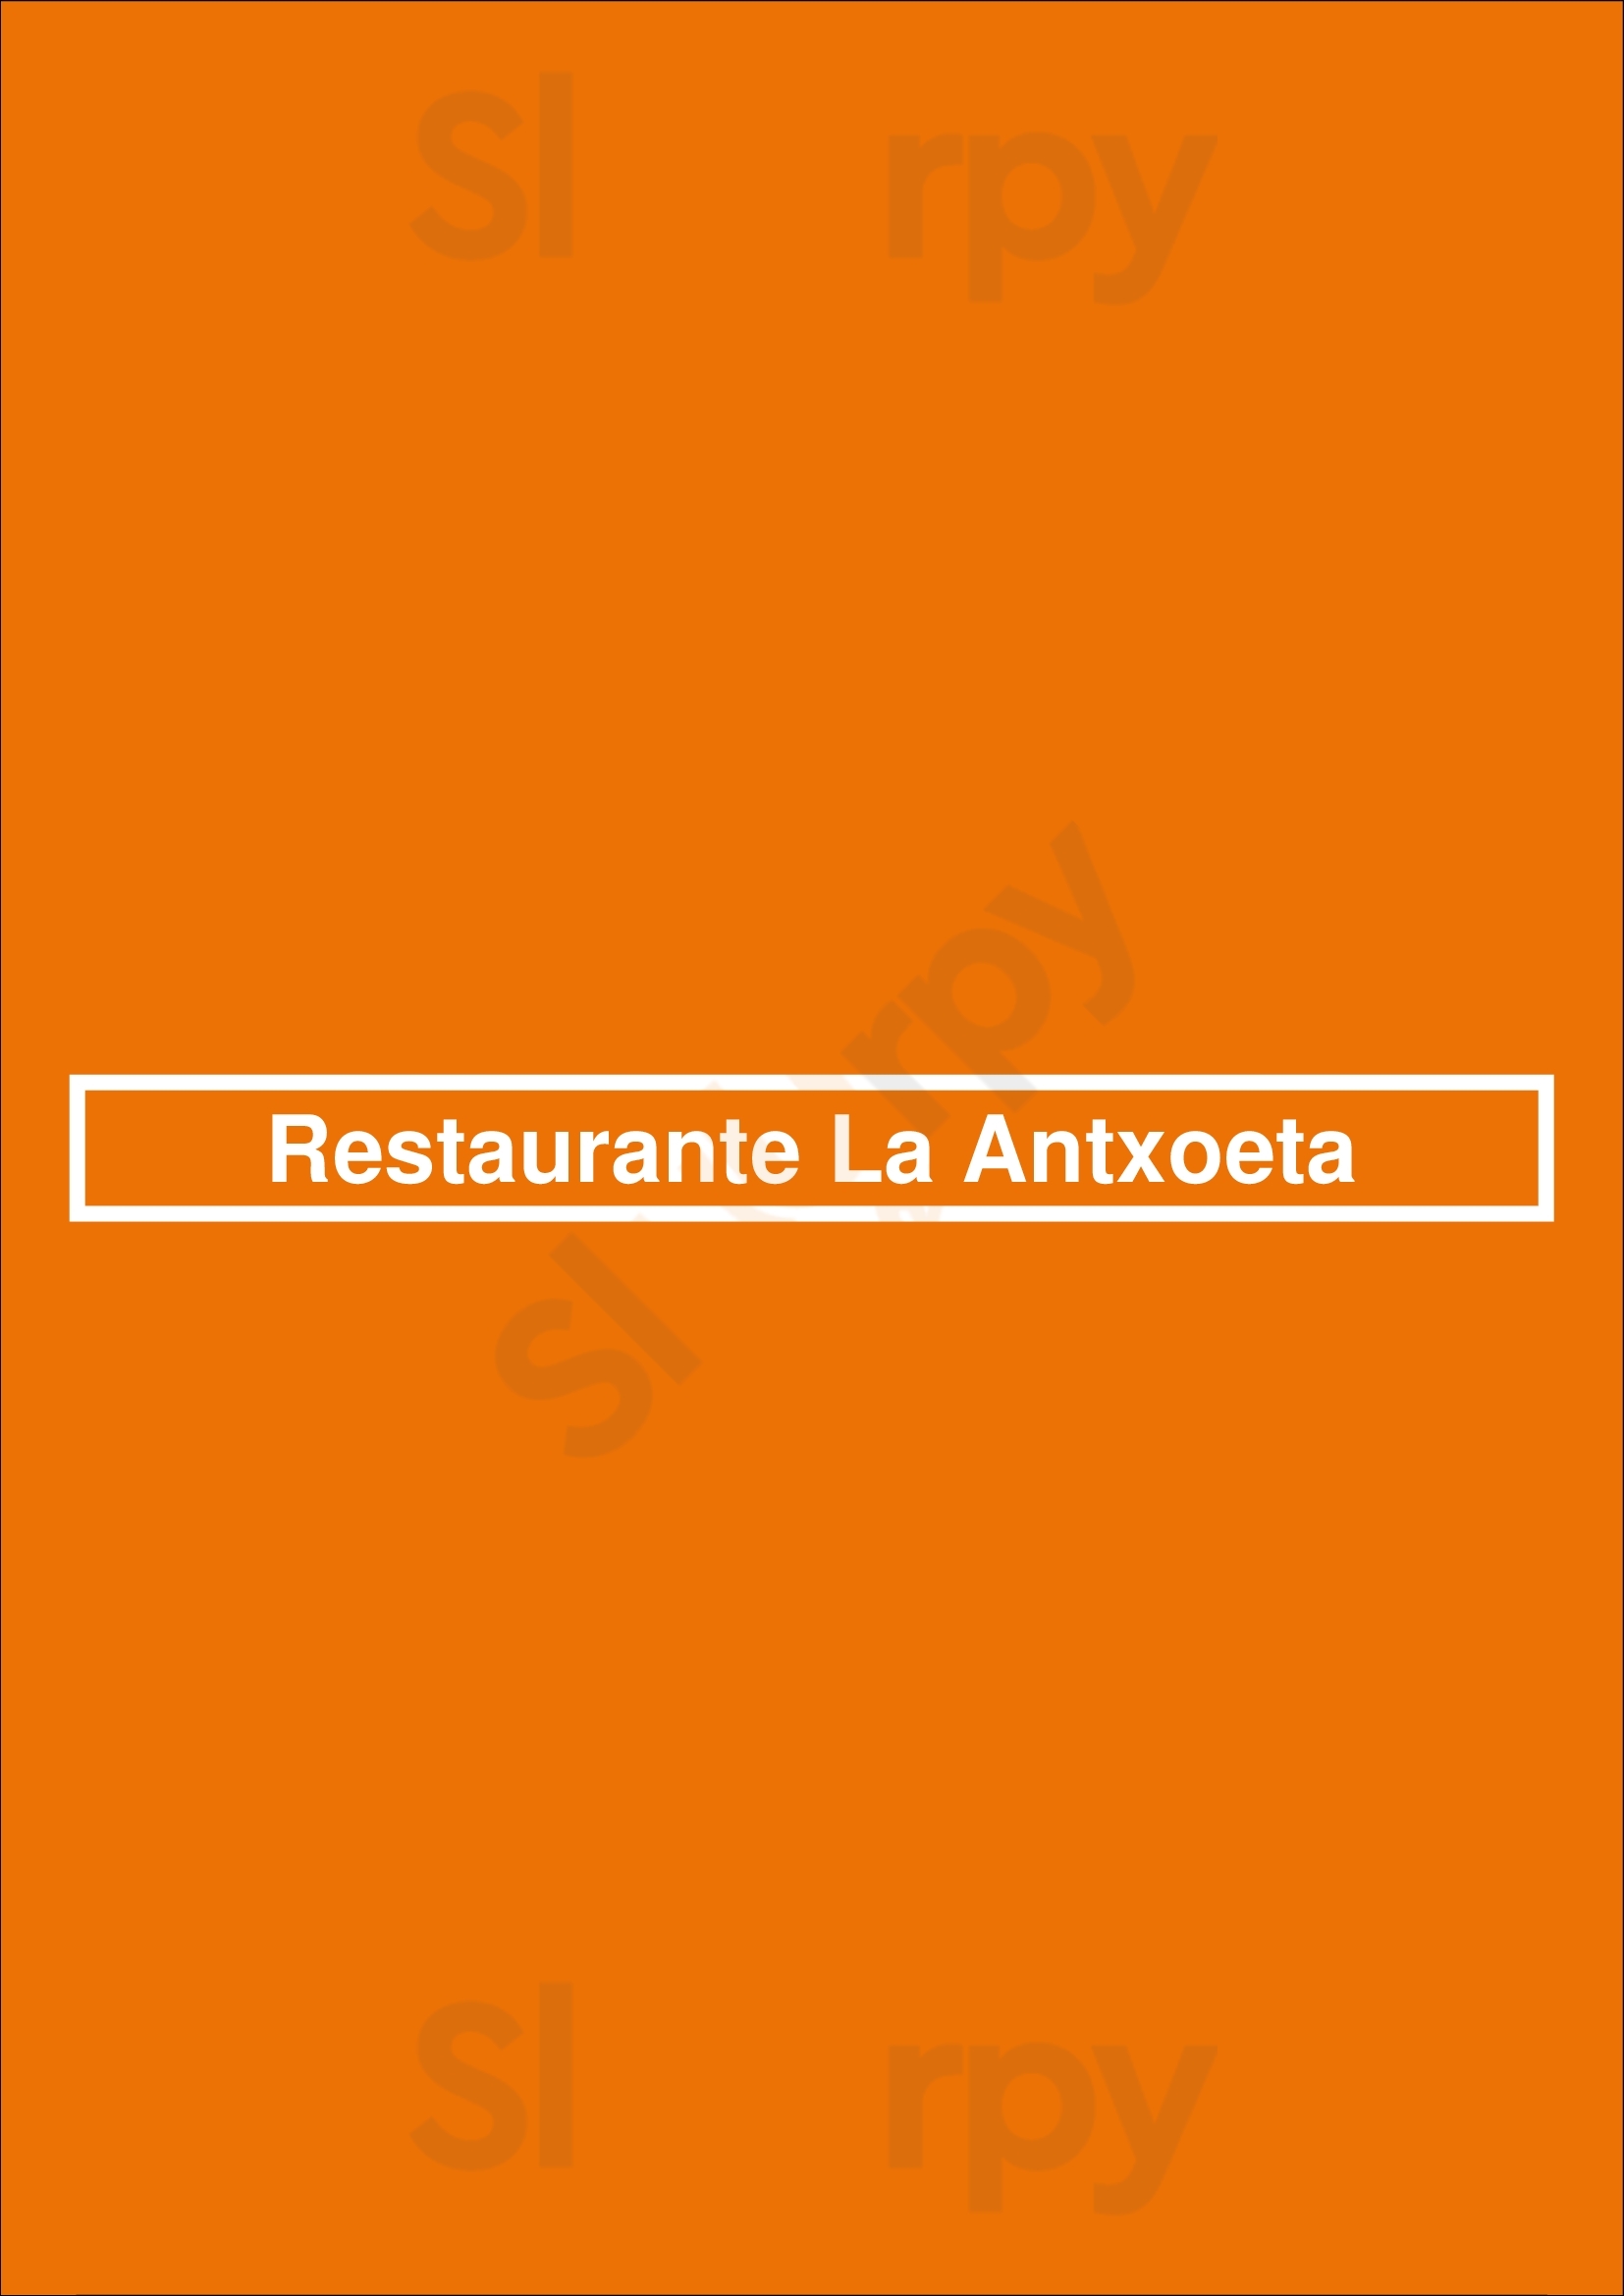 Restaurante La Antxoeta Málaga Menu - 1